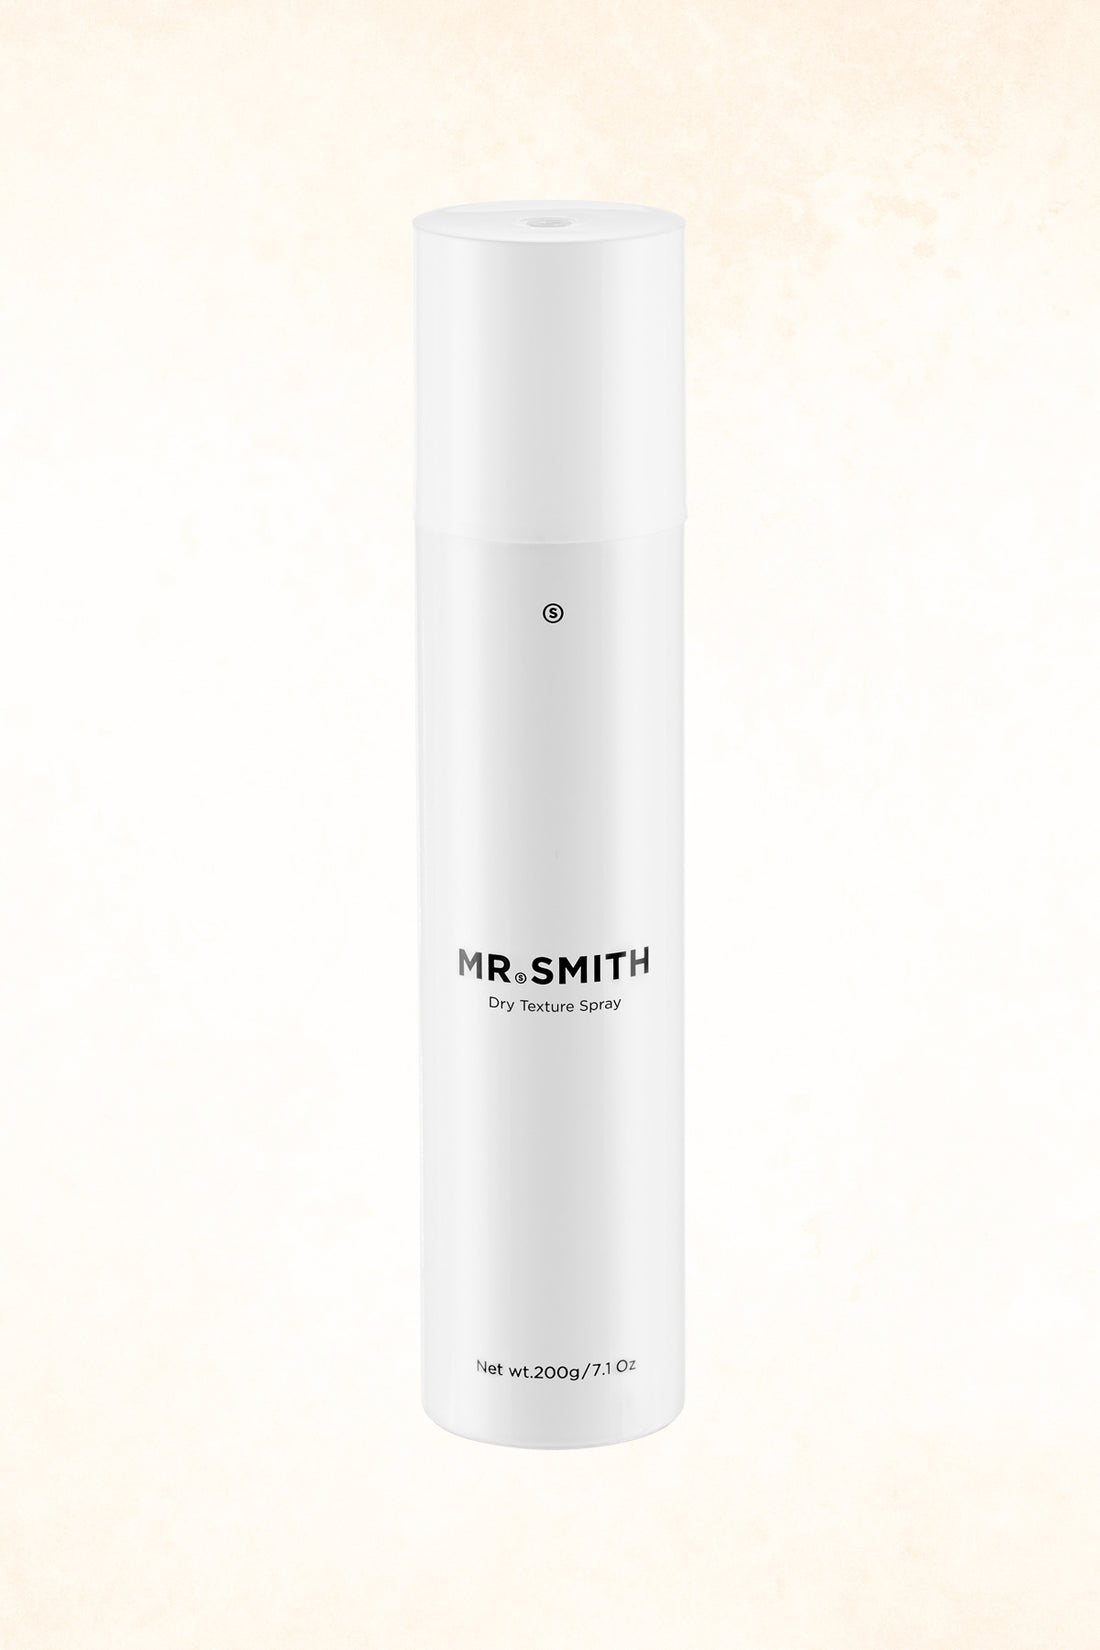 Mr Smith – Dry Texture Spray – 200 g